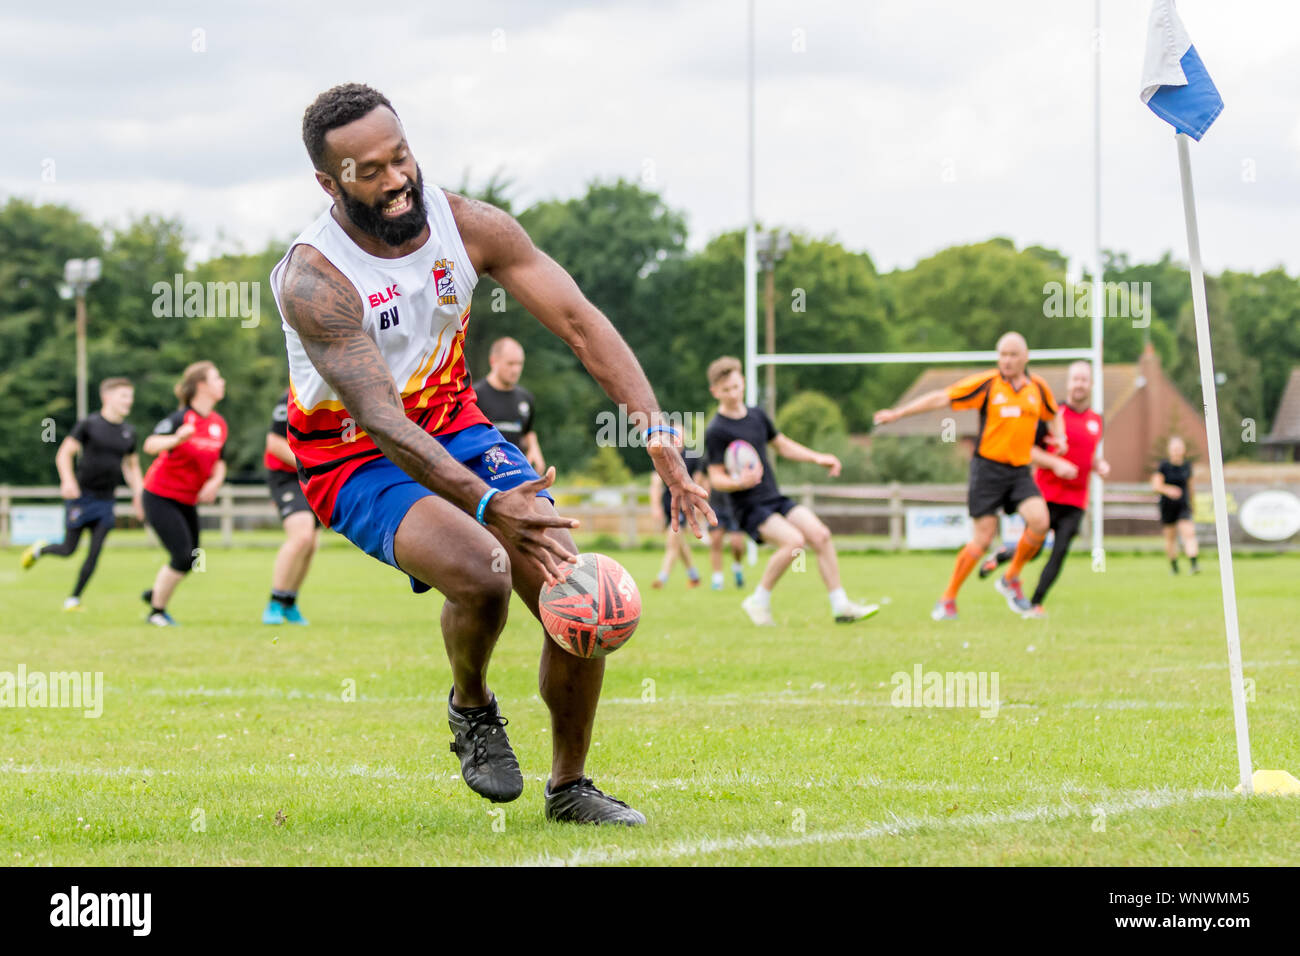 Amatori rugby touch player (Fijian maschio, 40-50 y) cade la sfera come egli raggiunge verso il basso con la sfera al cliente una prova Foto Stock